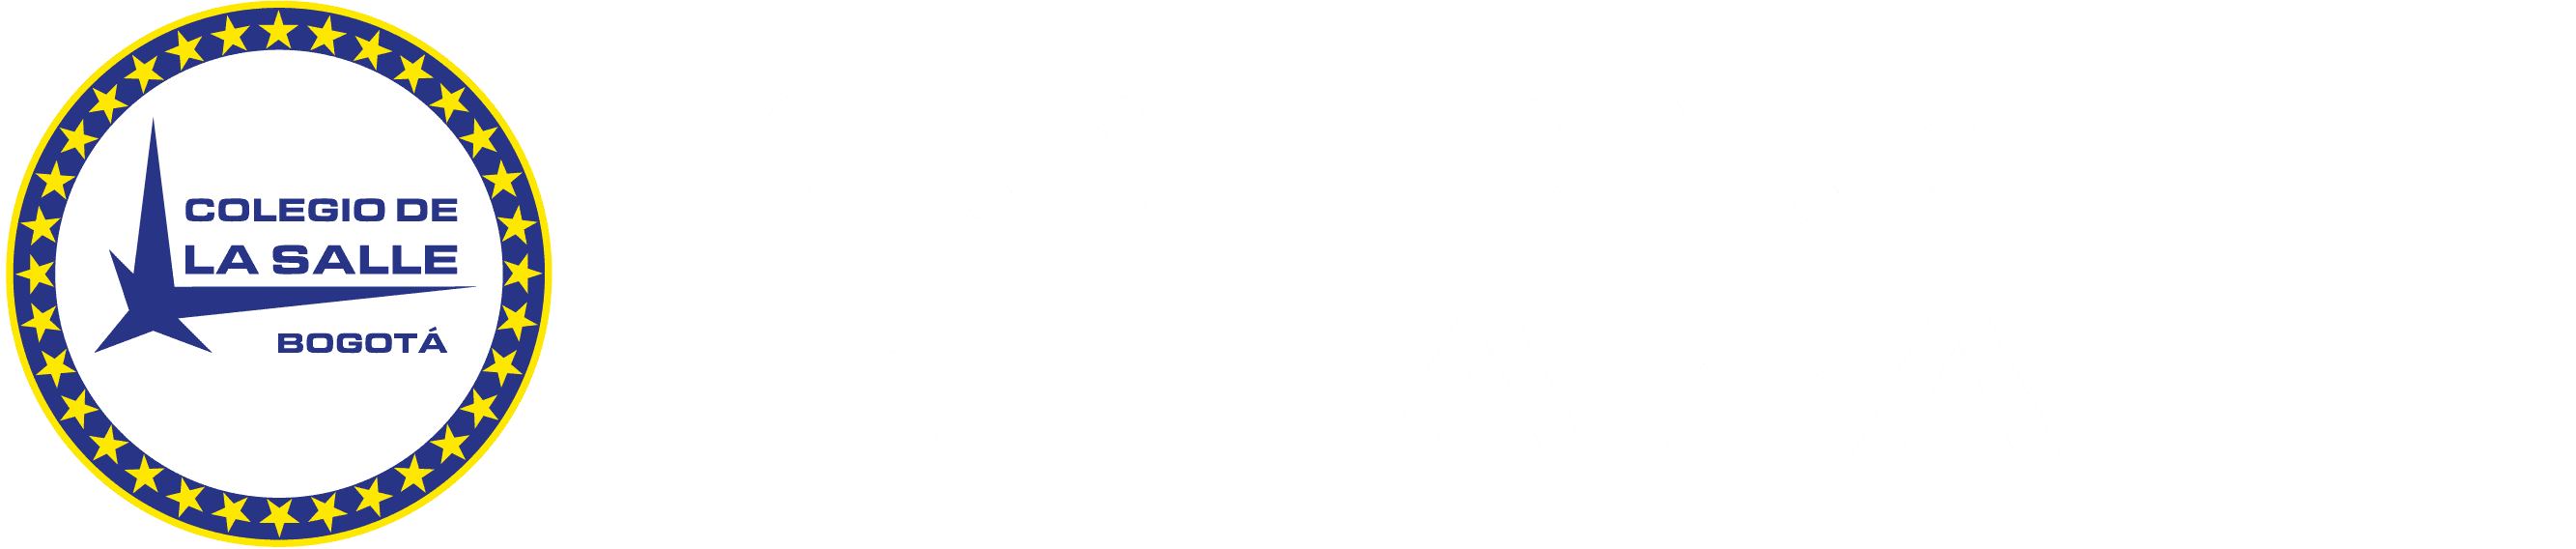 COLEGIO DE LA SALLE|Colegios BOGOTA|COLEGIOS COLOMBIA